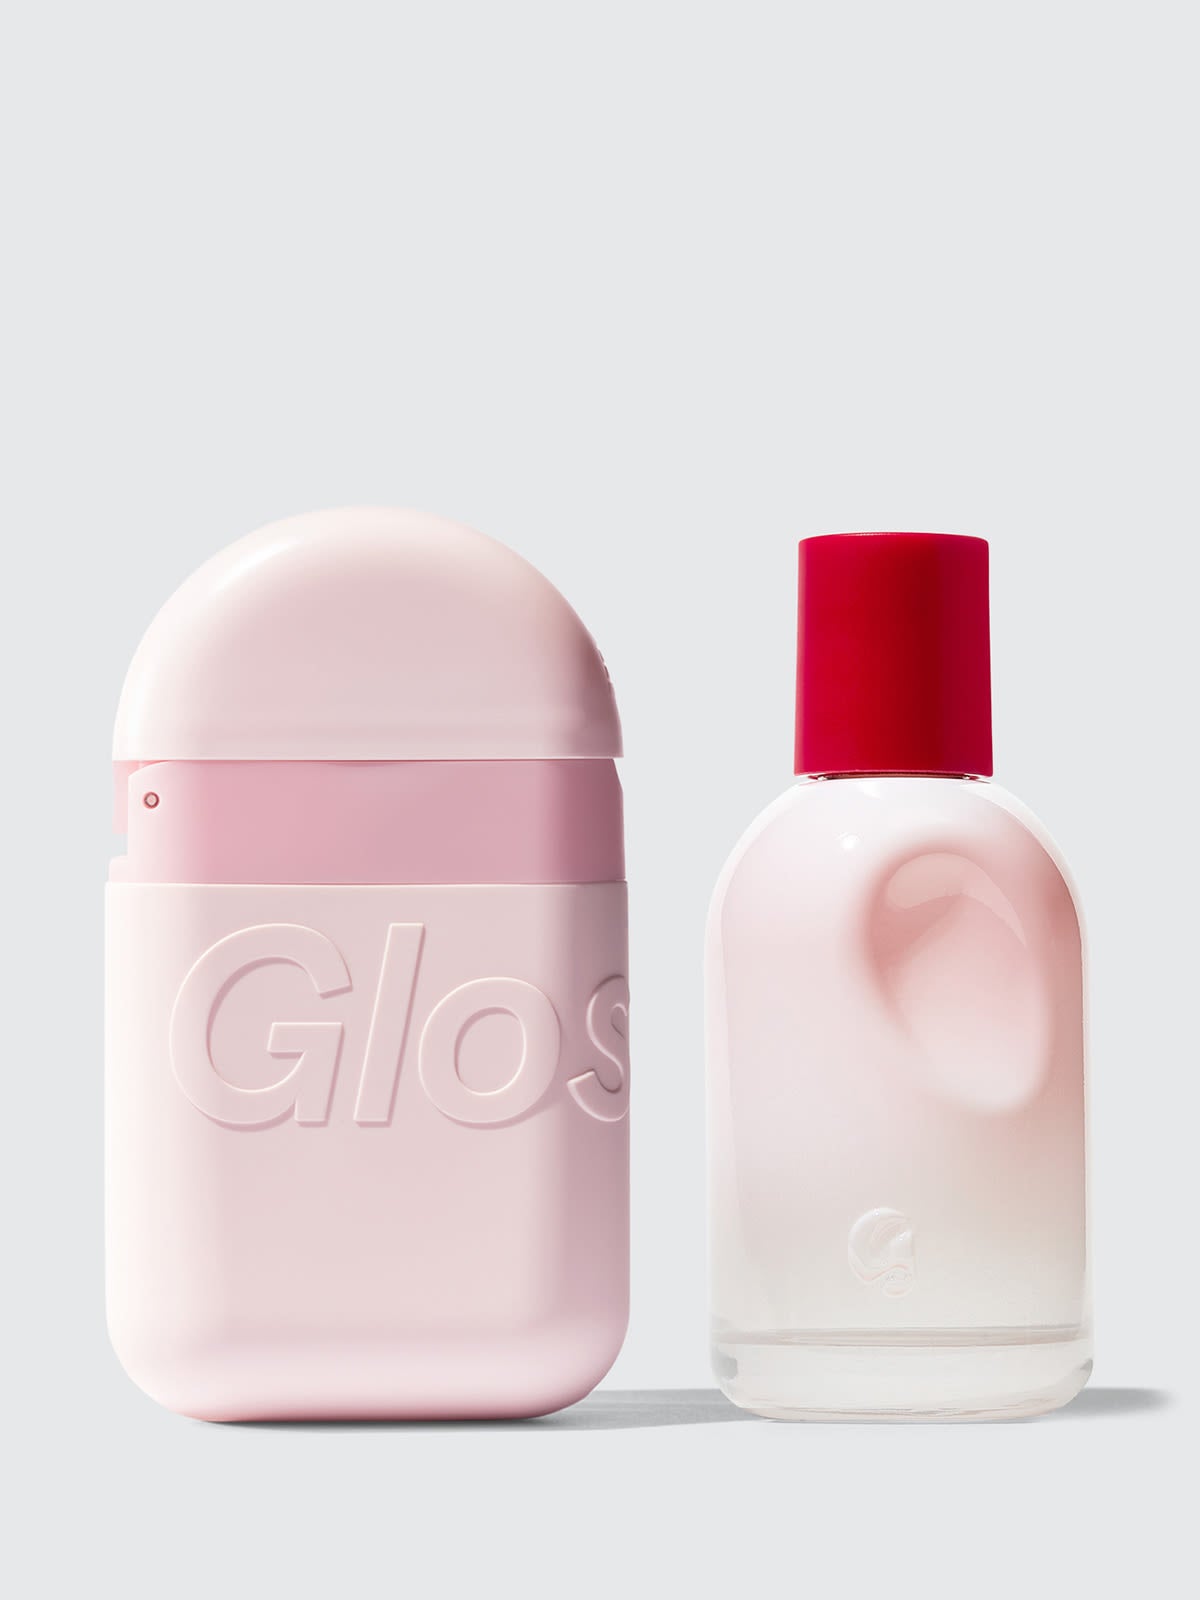 New perfumes omg? : r/glossier